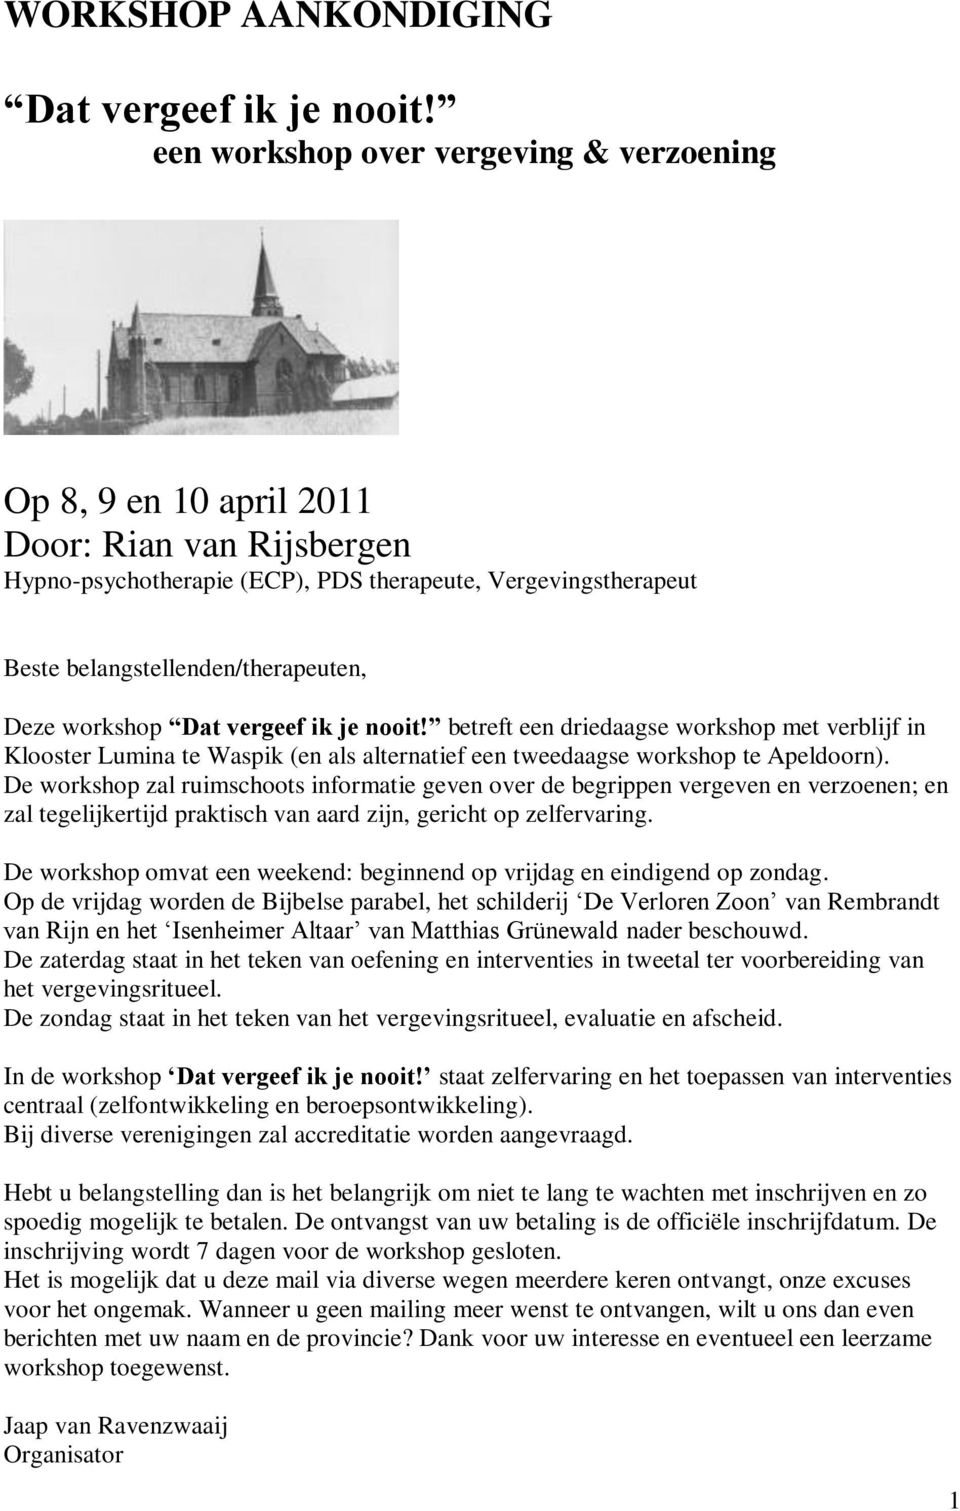 workshop Dat vergeef ik je nooit! betreft een driedaagse workshop met verblijf in Klooster Lumina te Waspik (en als alternatief een tweedaagse workshop te Apeldoorn).